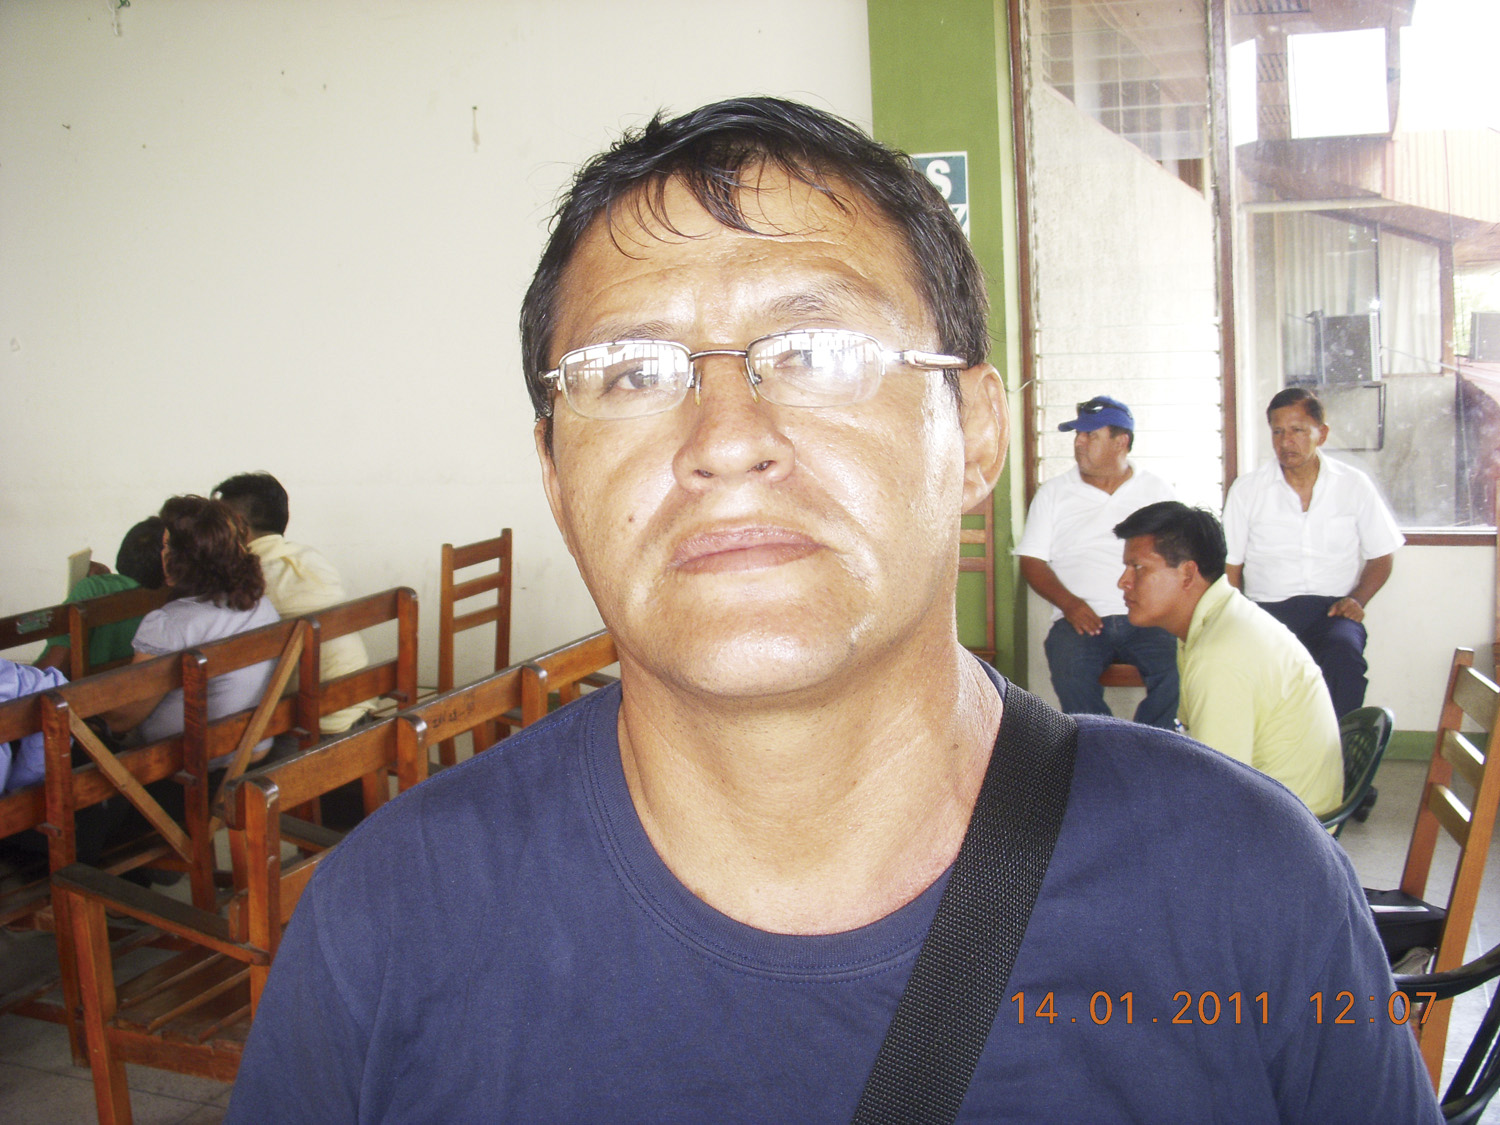 Carlos Holgado, presidente del comité de infraestructura del colegio “San Lorenzo”, Datem del Marañón.